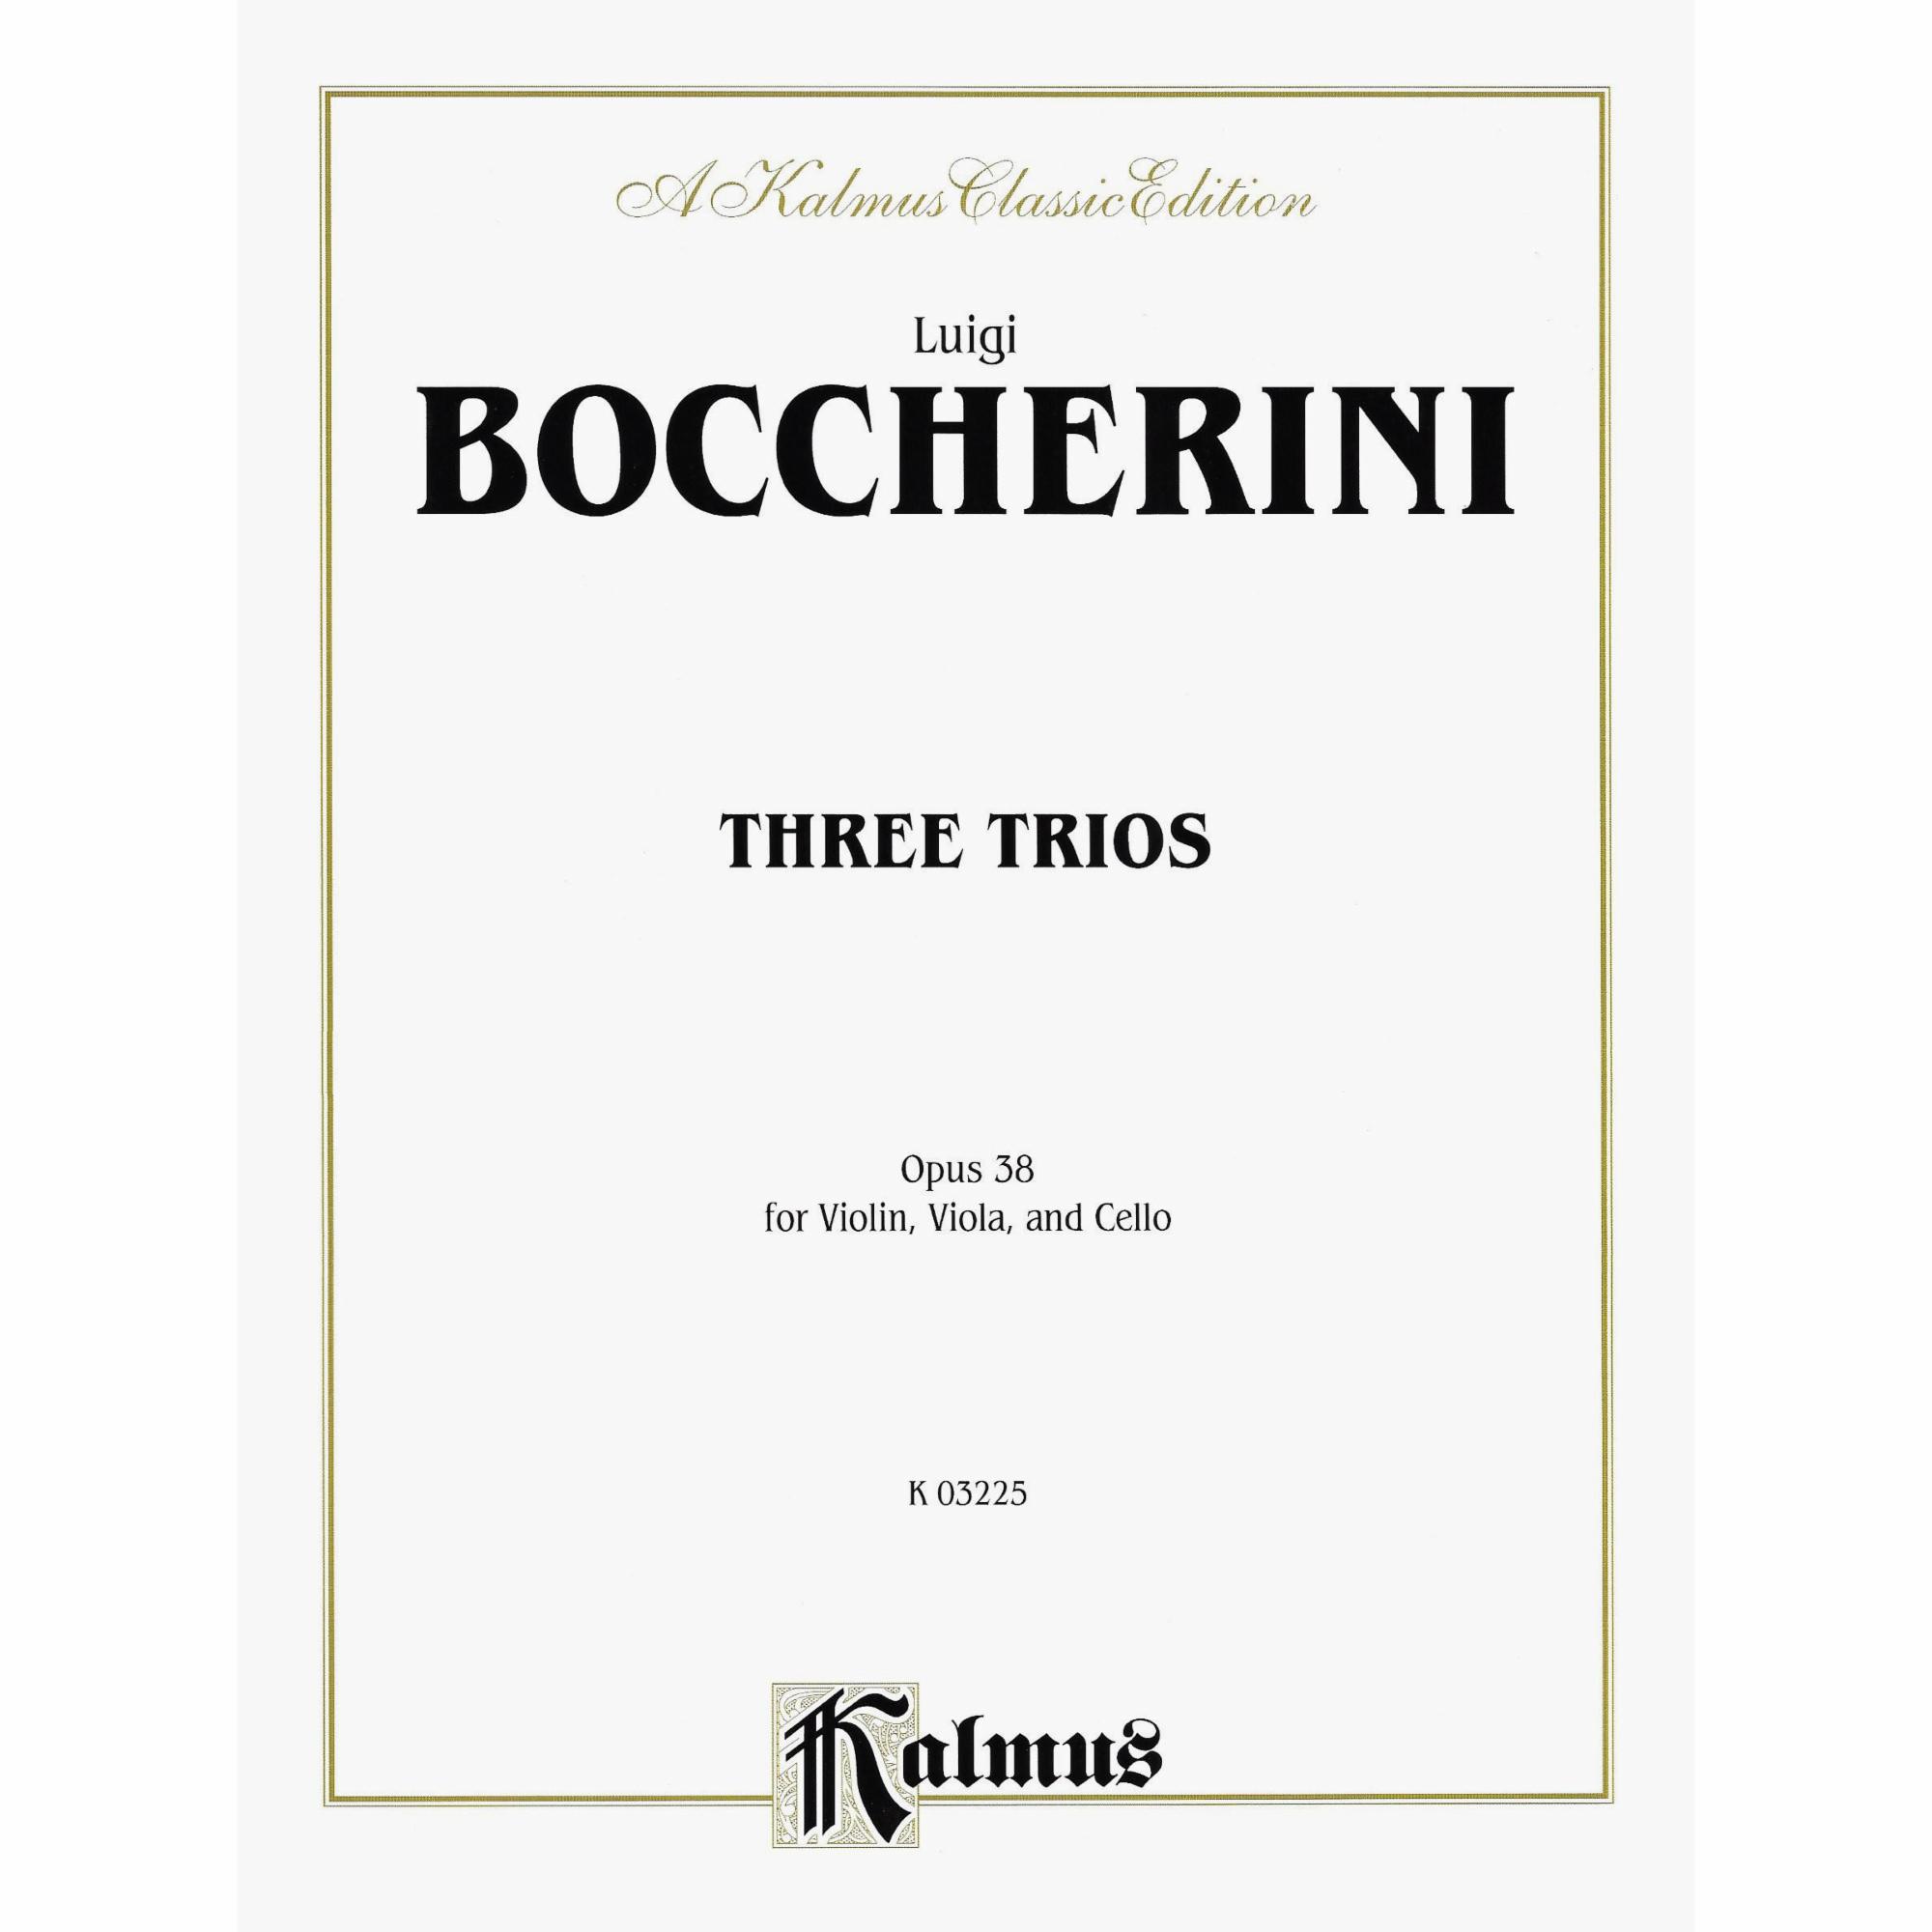 Boccherini -- Three Trios, Op. 38 for Violin, Viola, and Cello